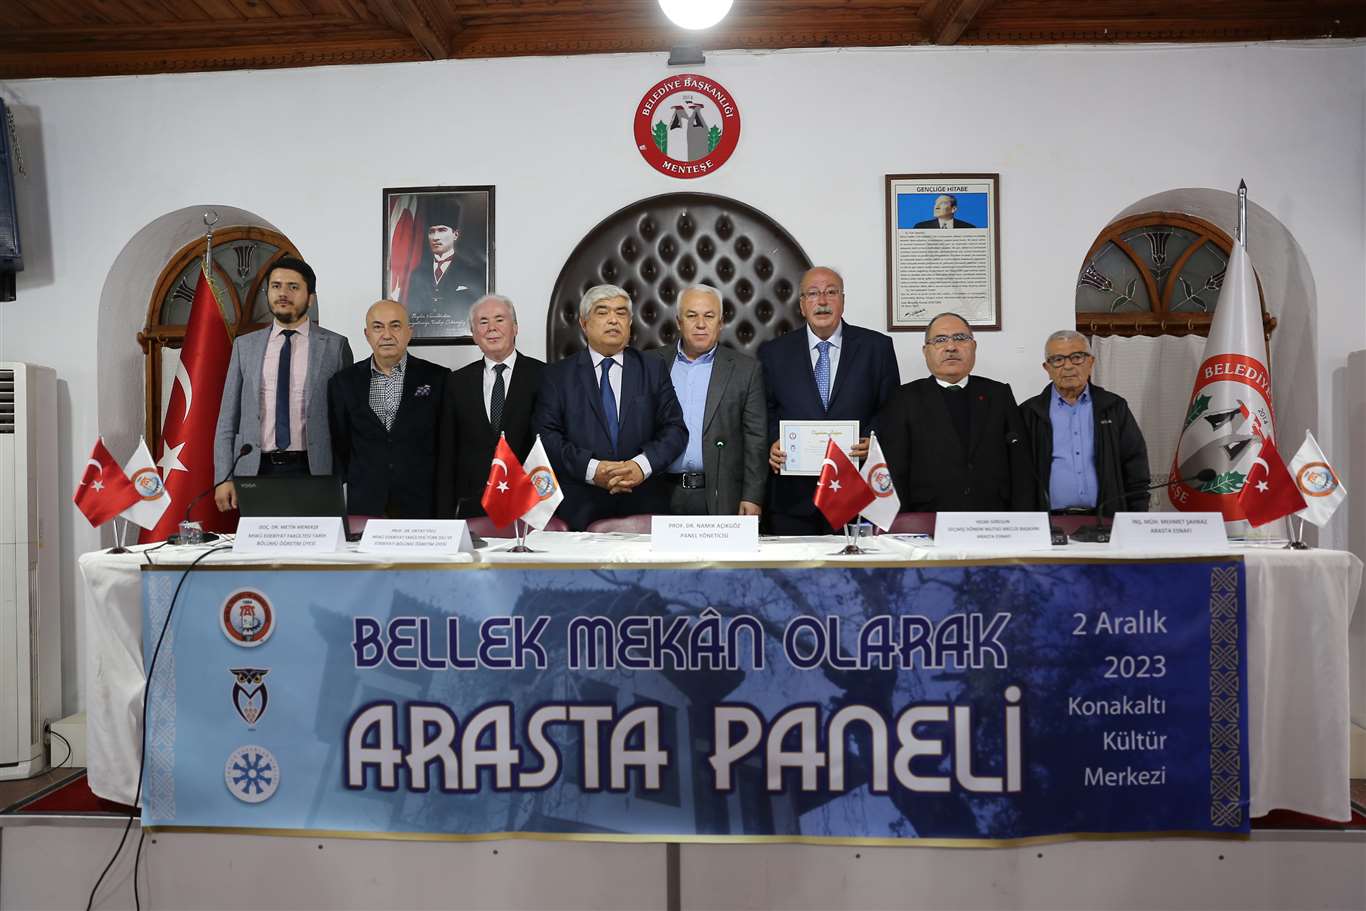  Bellek Mekan Arasta Paneli gerçekleştirildi haberi